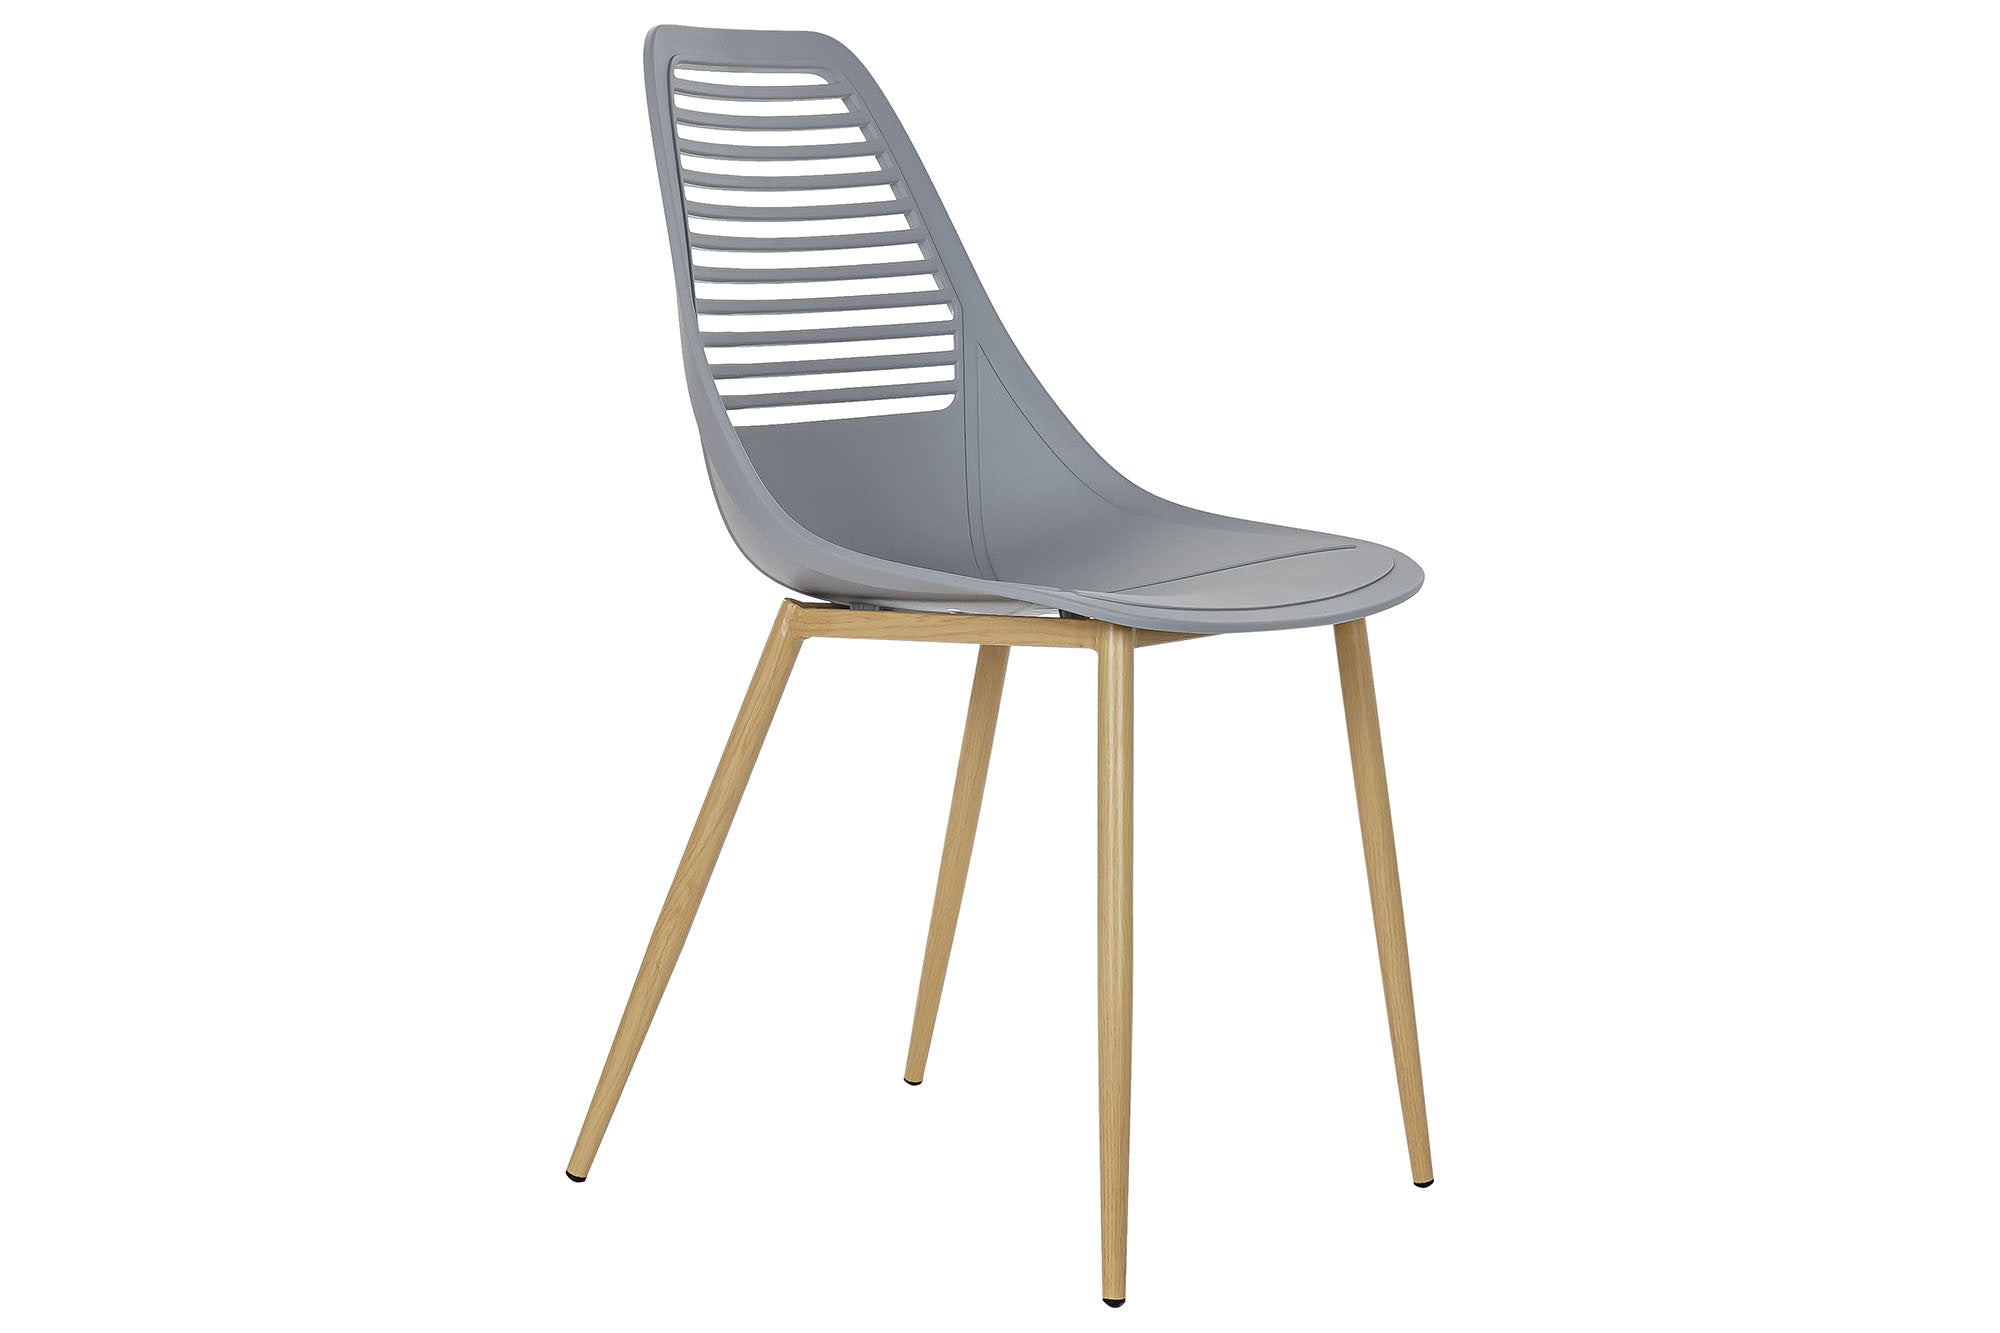 Scandinavian Design Chair Matte Light Gray and Light Brown - An Elegant Blend of Modernity and Comfort 